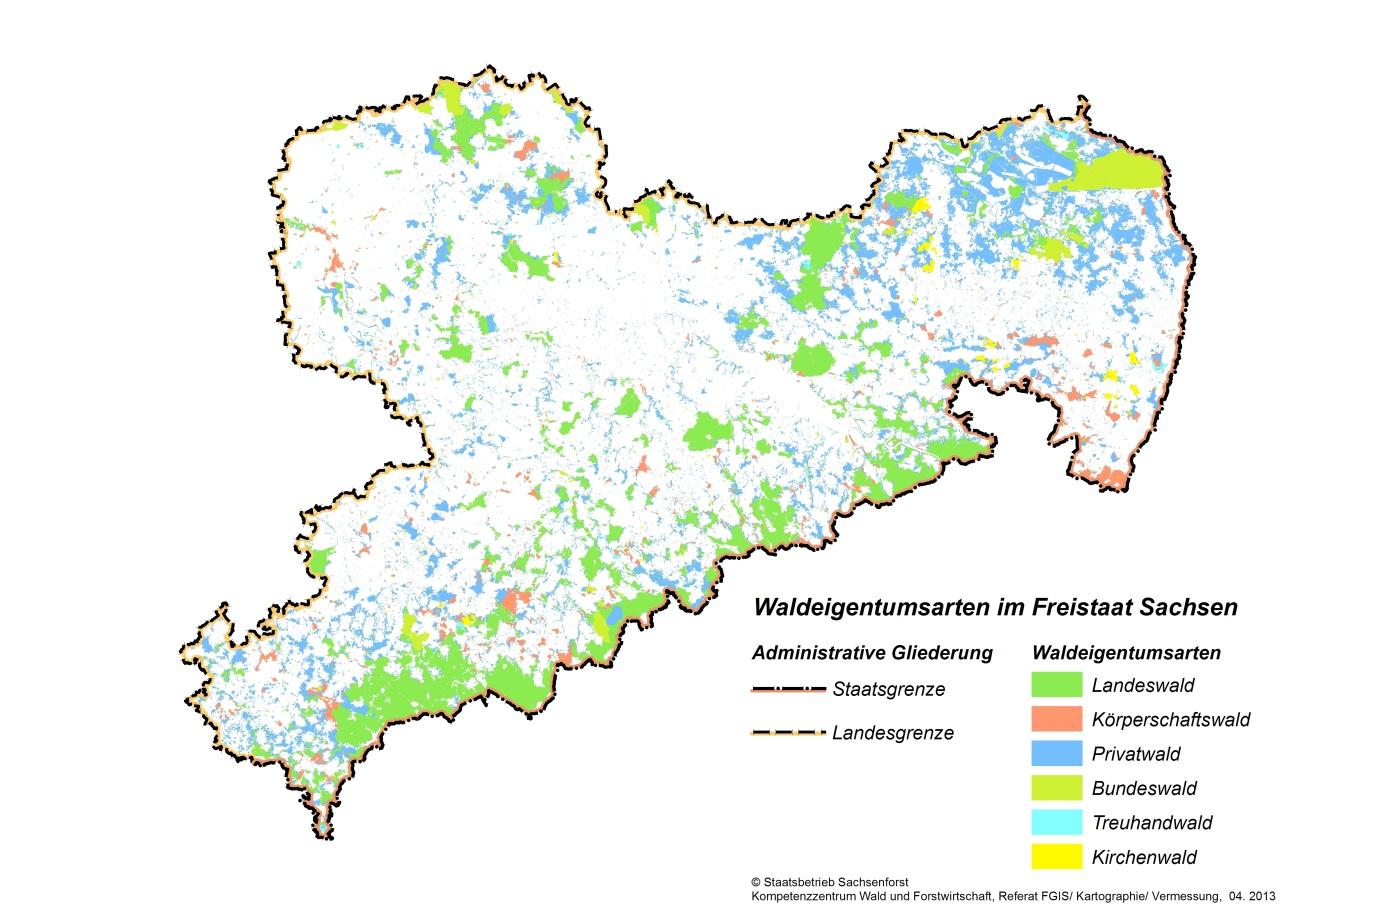 Powierzchnia lasu i struktura własnościowa lasów w Saksonii w roku 2013. Źródło: Saksońskie Lasy Państwowe.